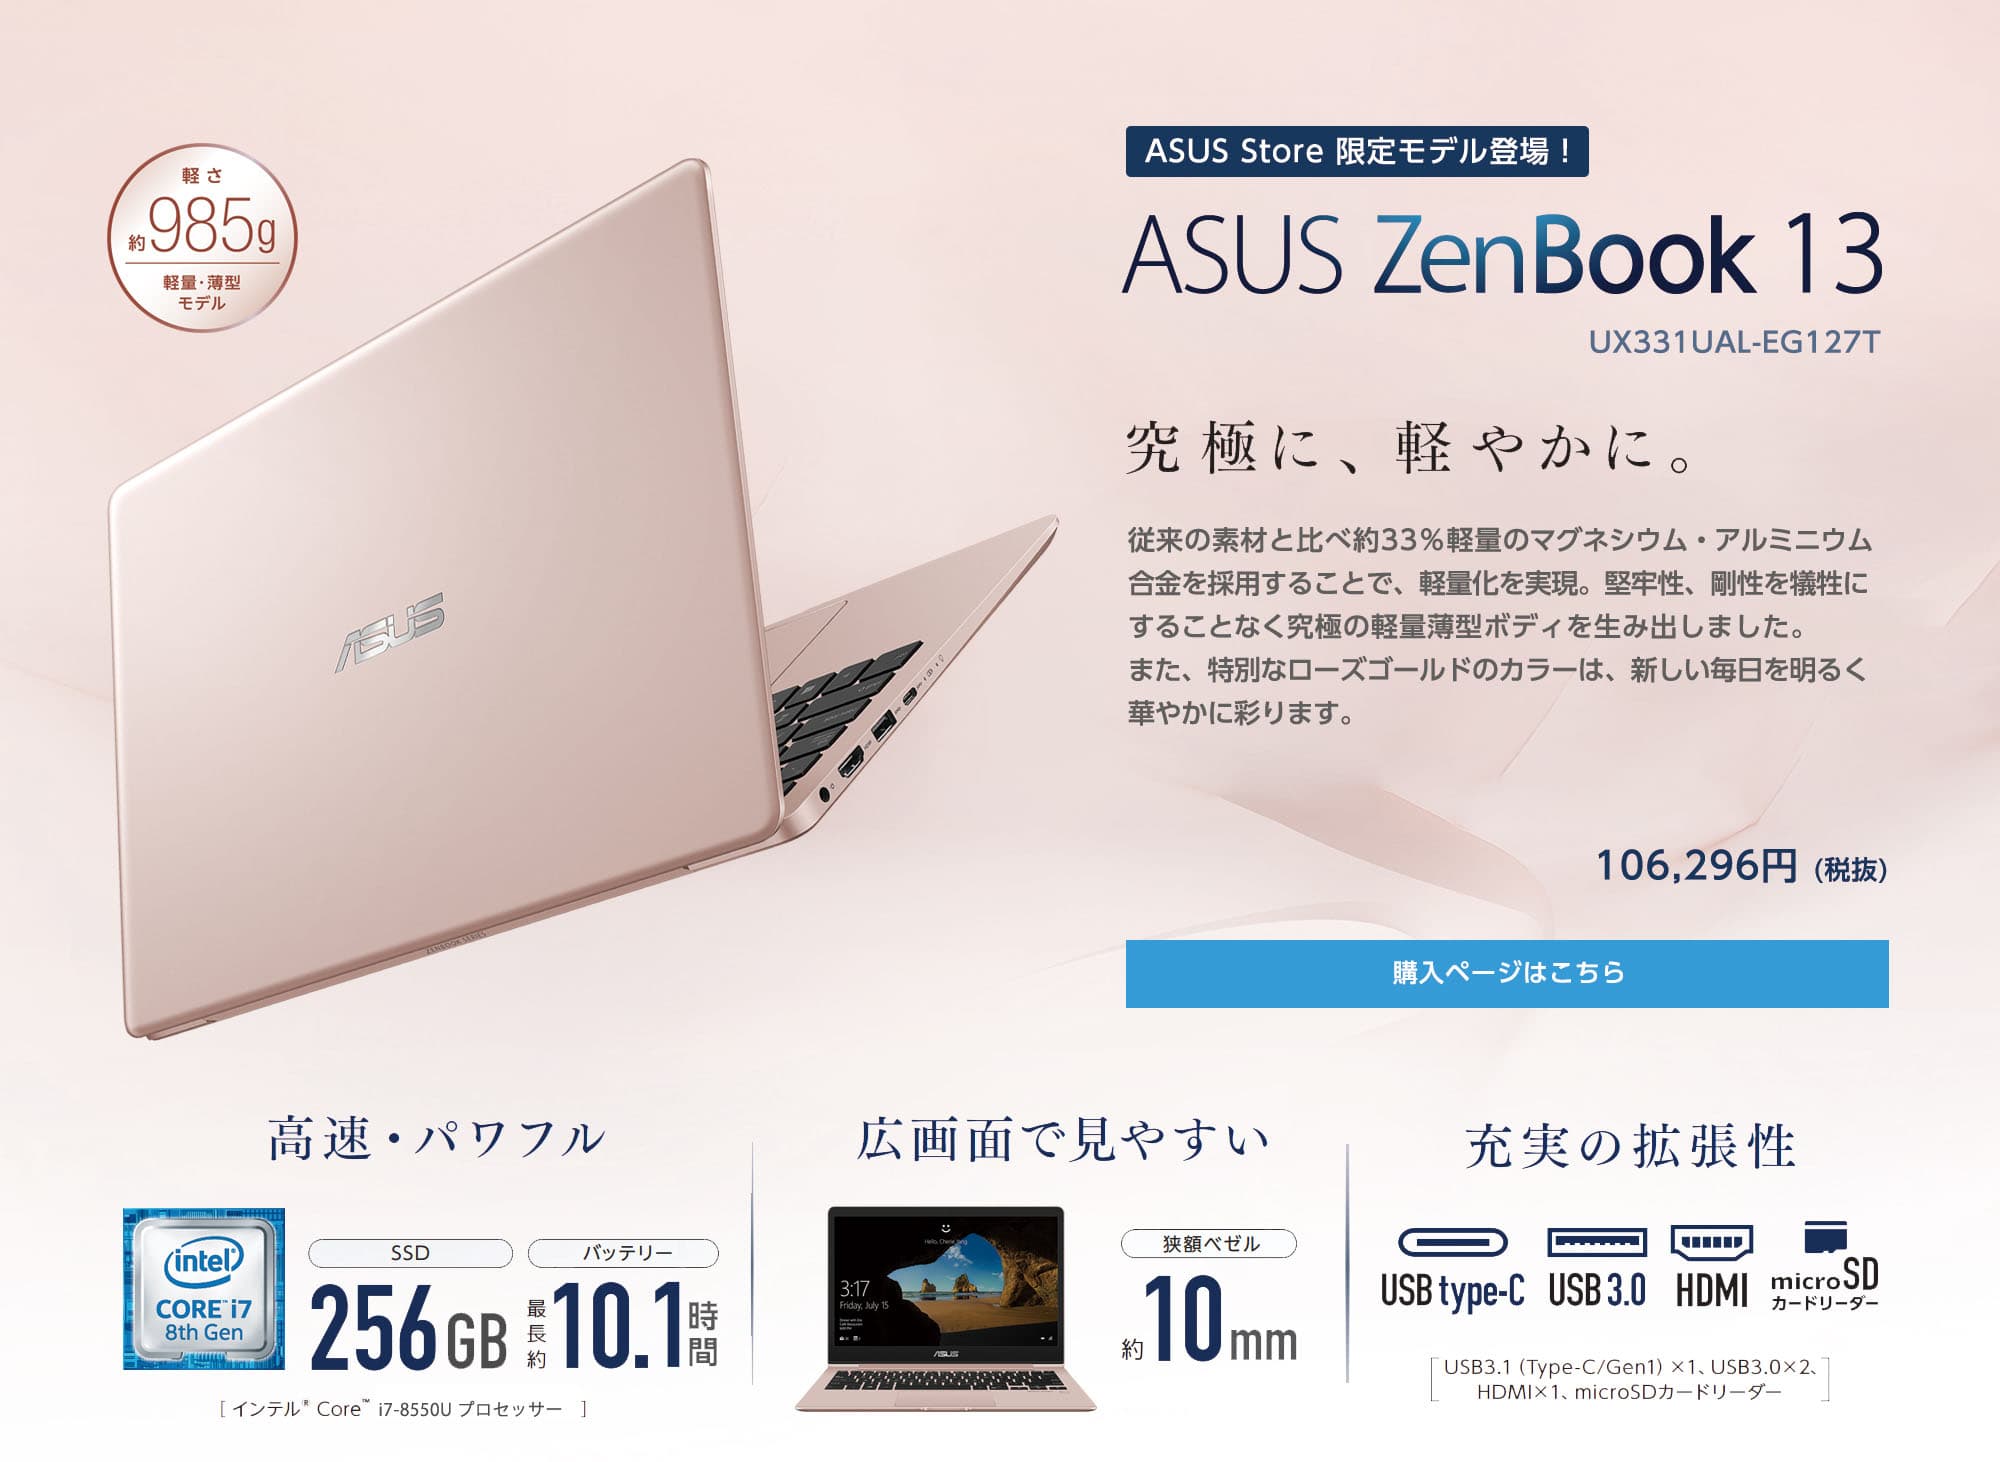 【新品】ASUS ZenBook 13 UX331UAL-EG127T